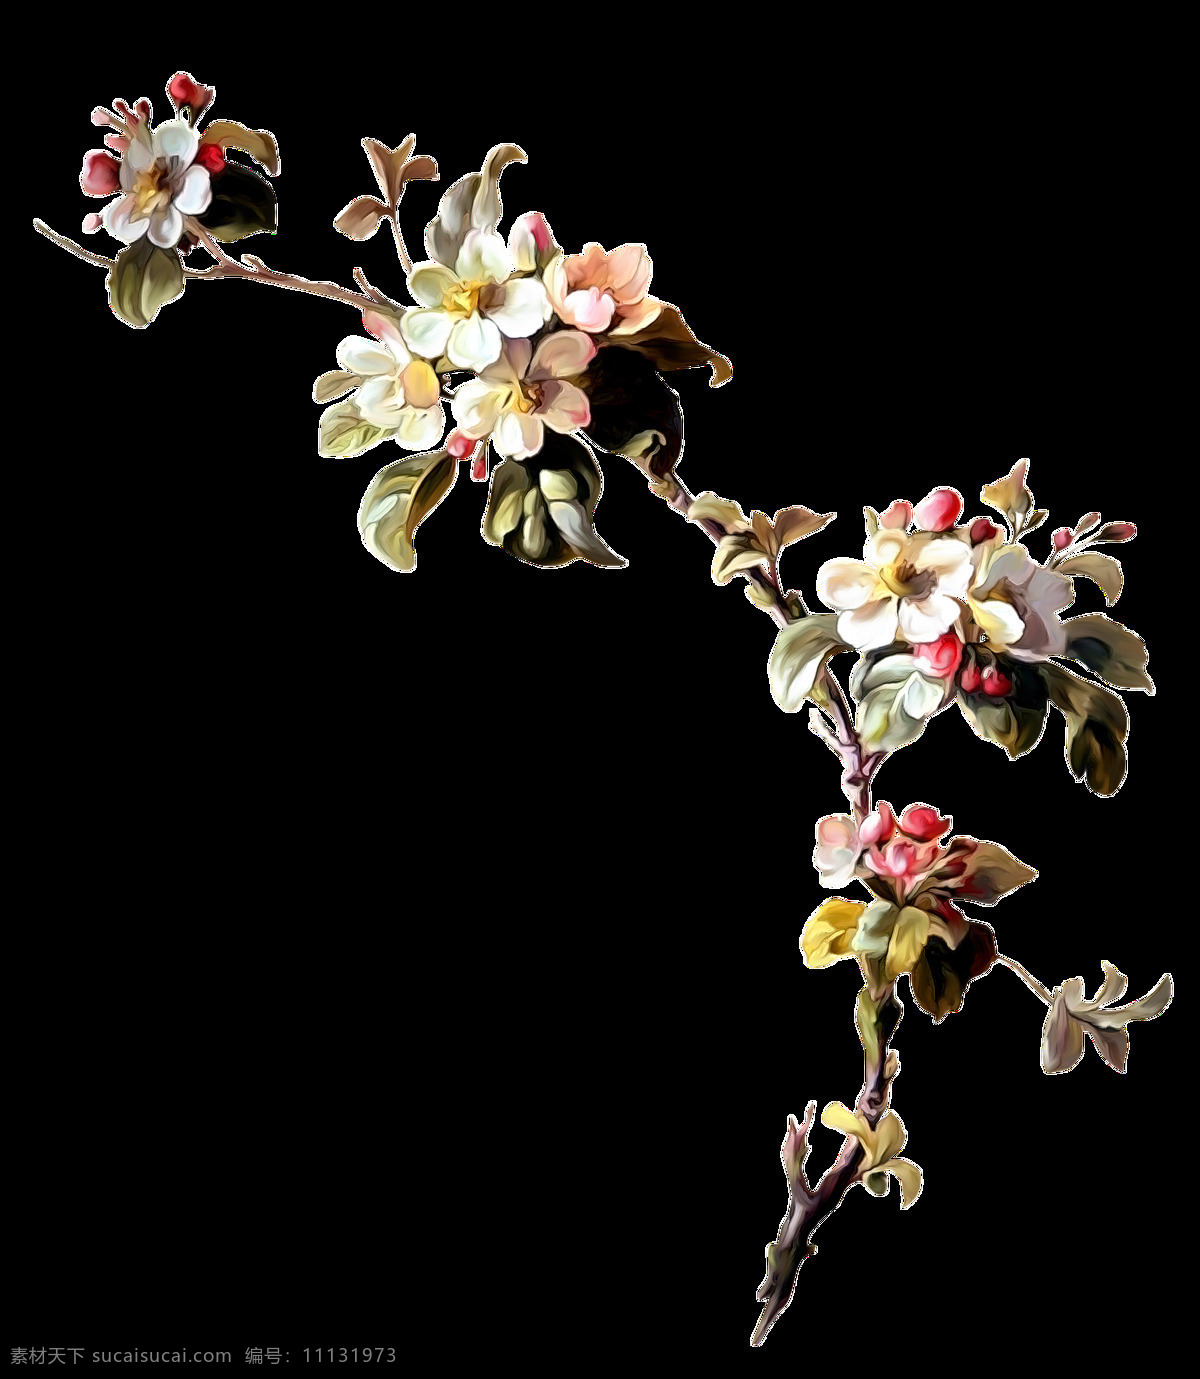 手绘 百花齐放 花枝 透明 生气盎然 大自然 天然 蓬勃 植物 透明素材 免扣素材 装饰图片